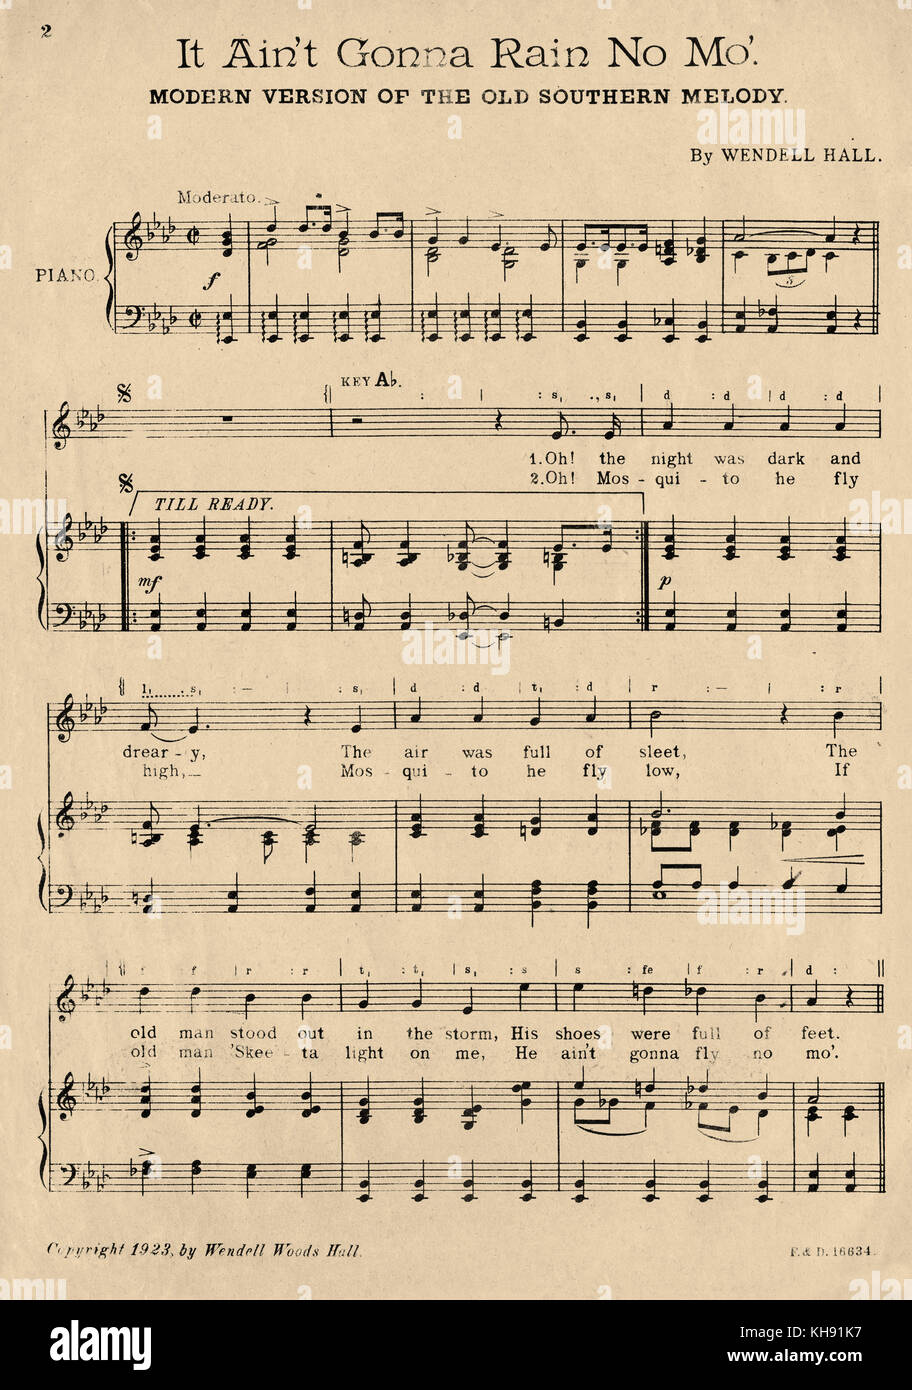 Essa Ain't Gonna Riain n. Mo' - canzone da Wendell Hall , 1923. La prima pagina del cliente. Pubblicato da Francesco, giorno e cacciatore, Londra. La versione moderna della melodia tradizionale del Sud Americano. Foto Stock